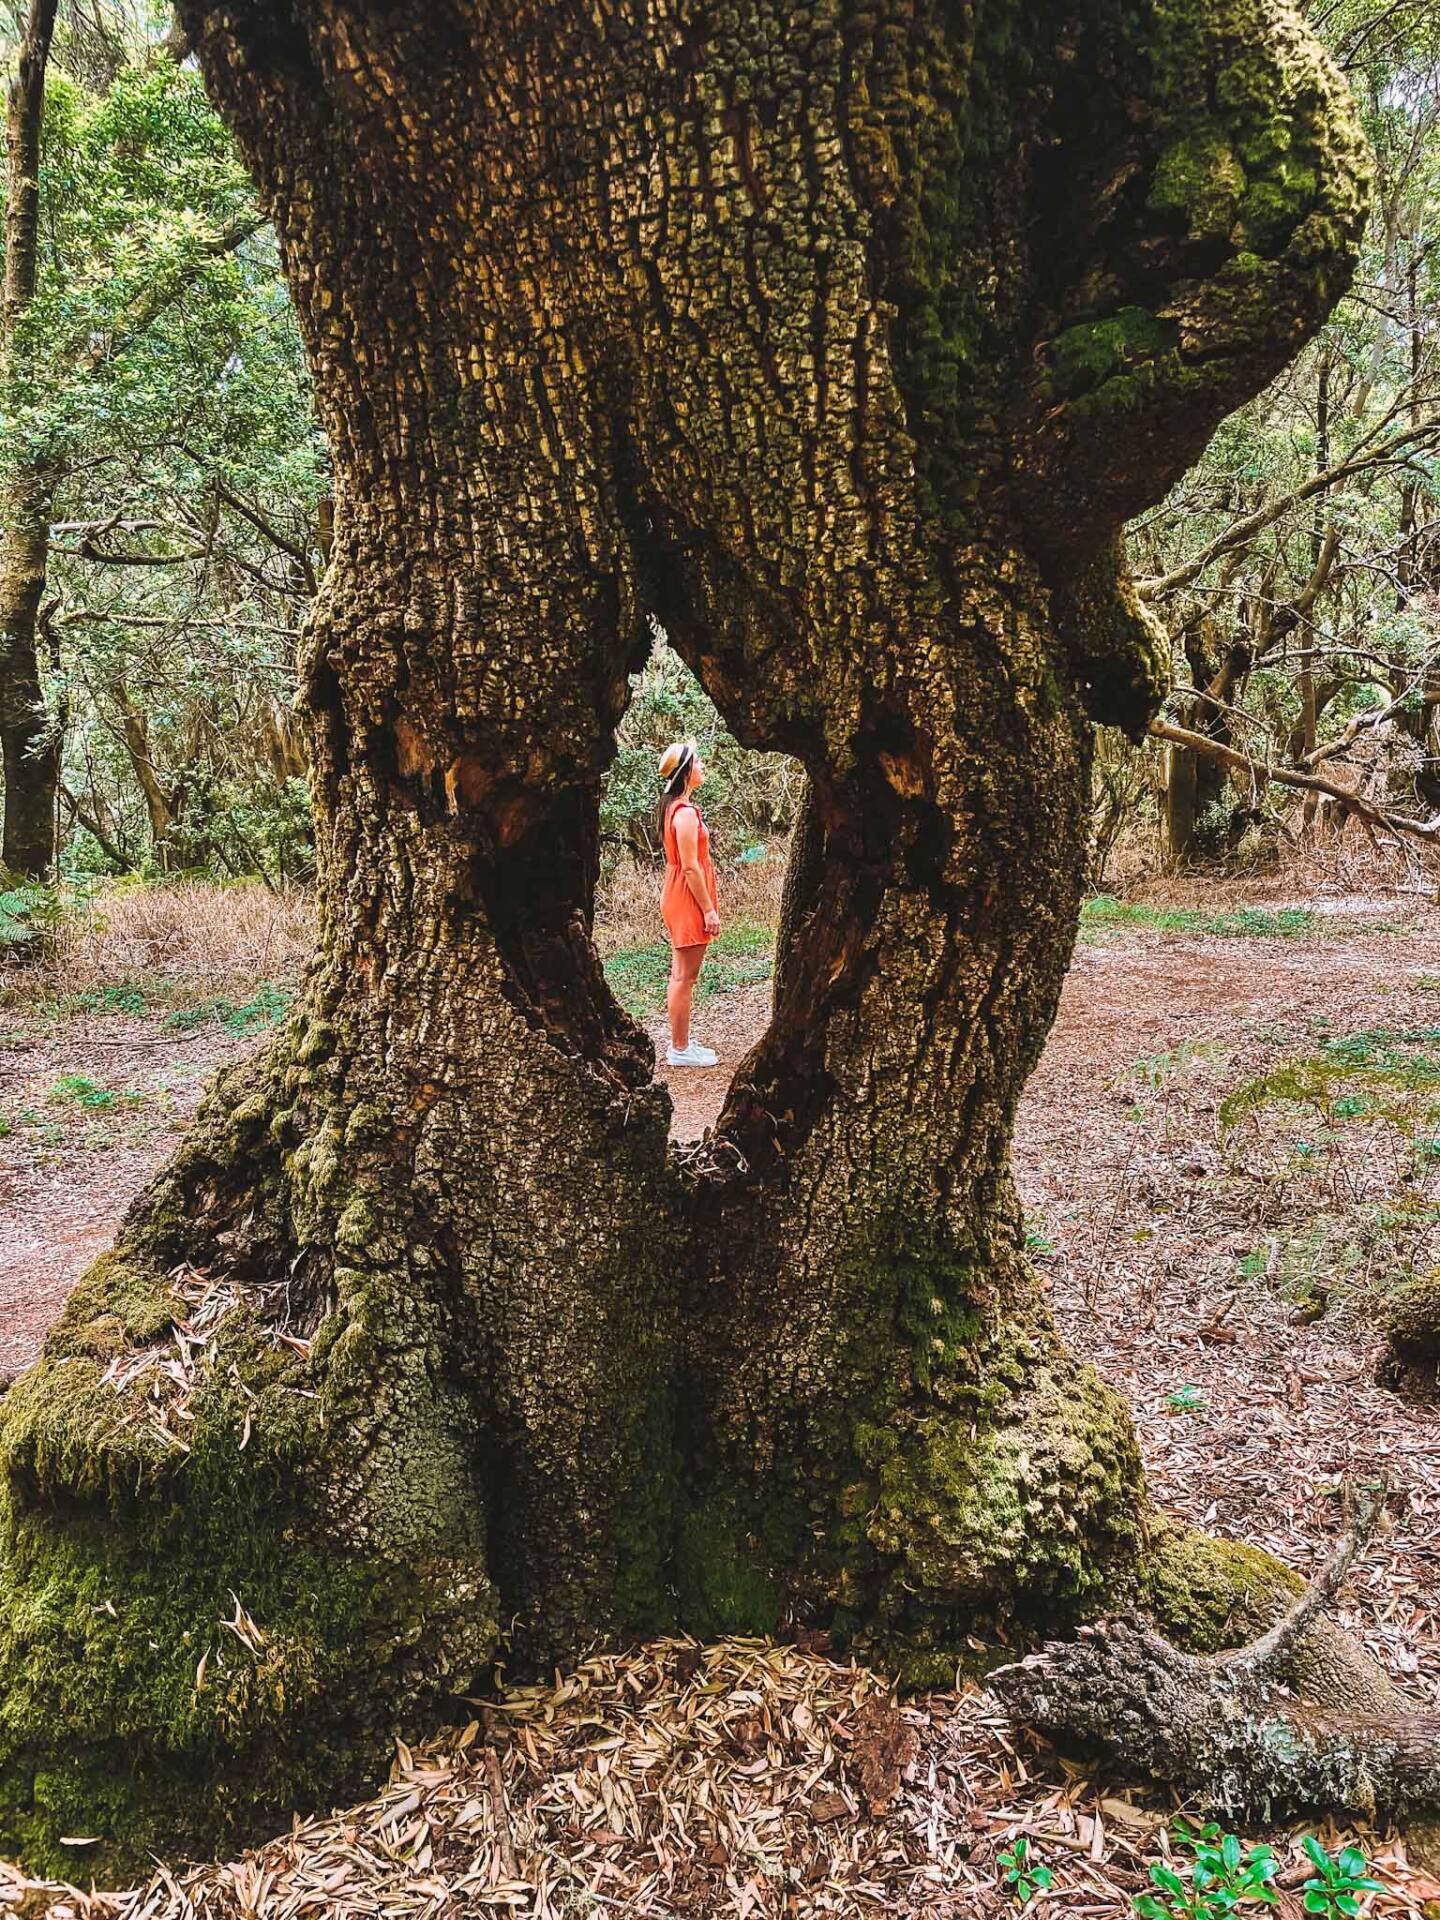 Best Instagram spots in El Hierro Canary Islands - La Llania forest trail